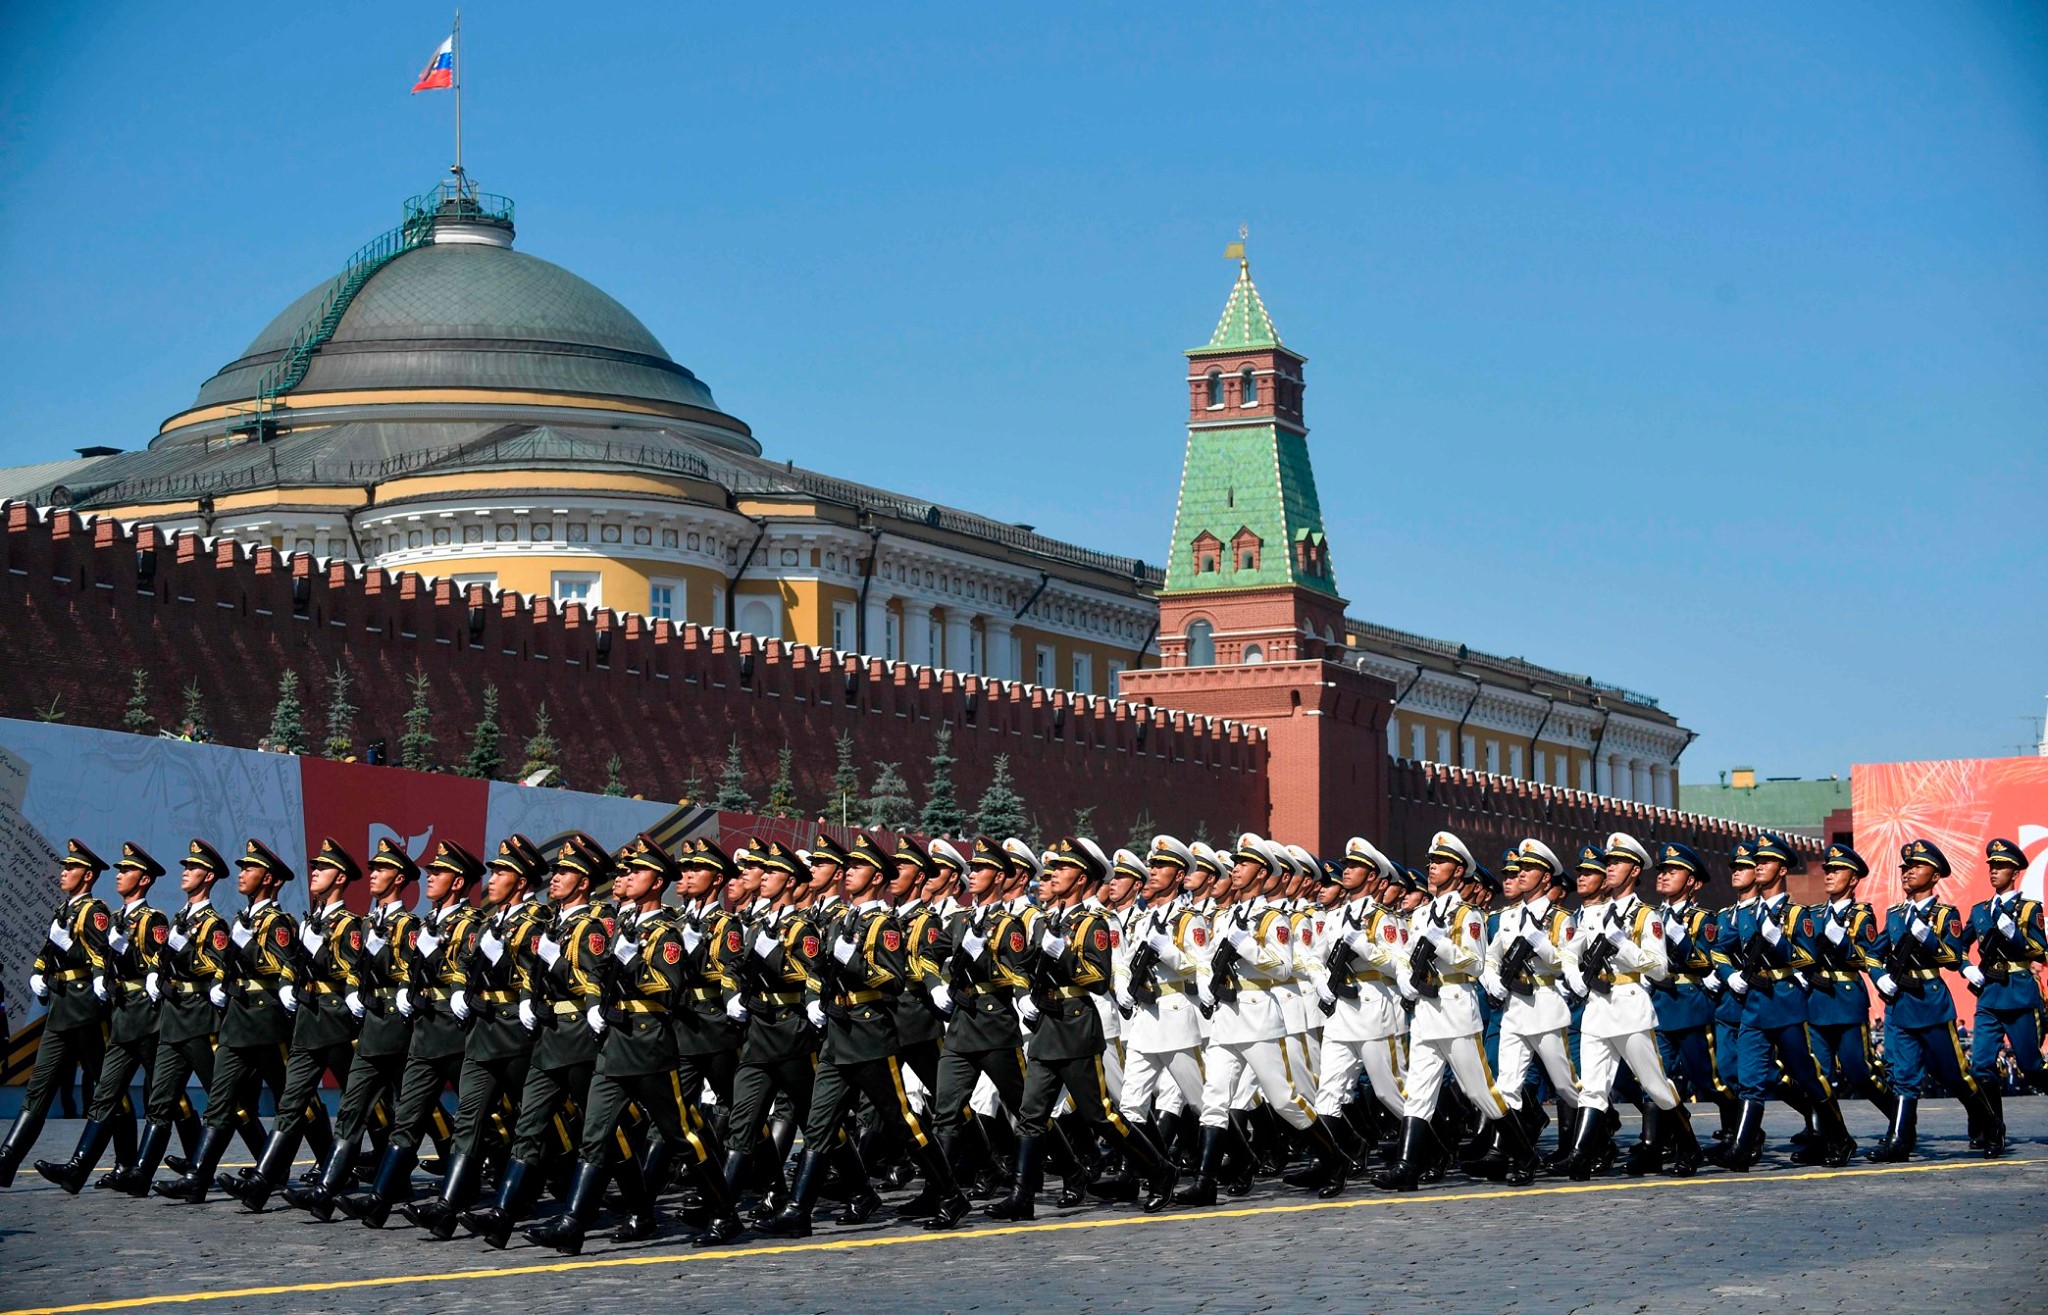 См парад. Парад на красной площади в Москве 2022. Парад Победы. Военный парад на красной площади. Парад фото.